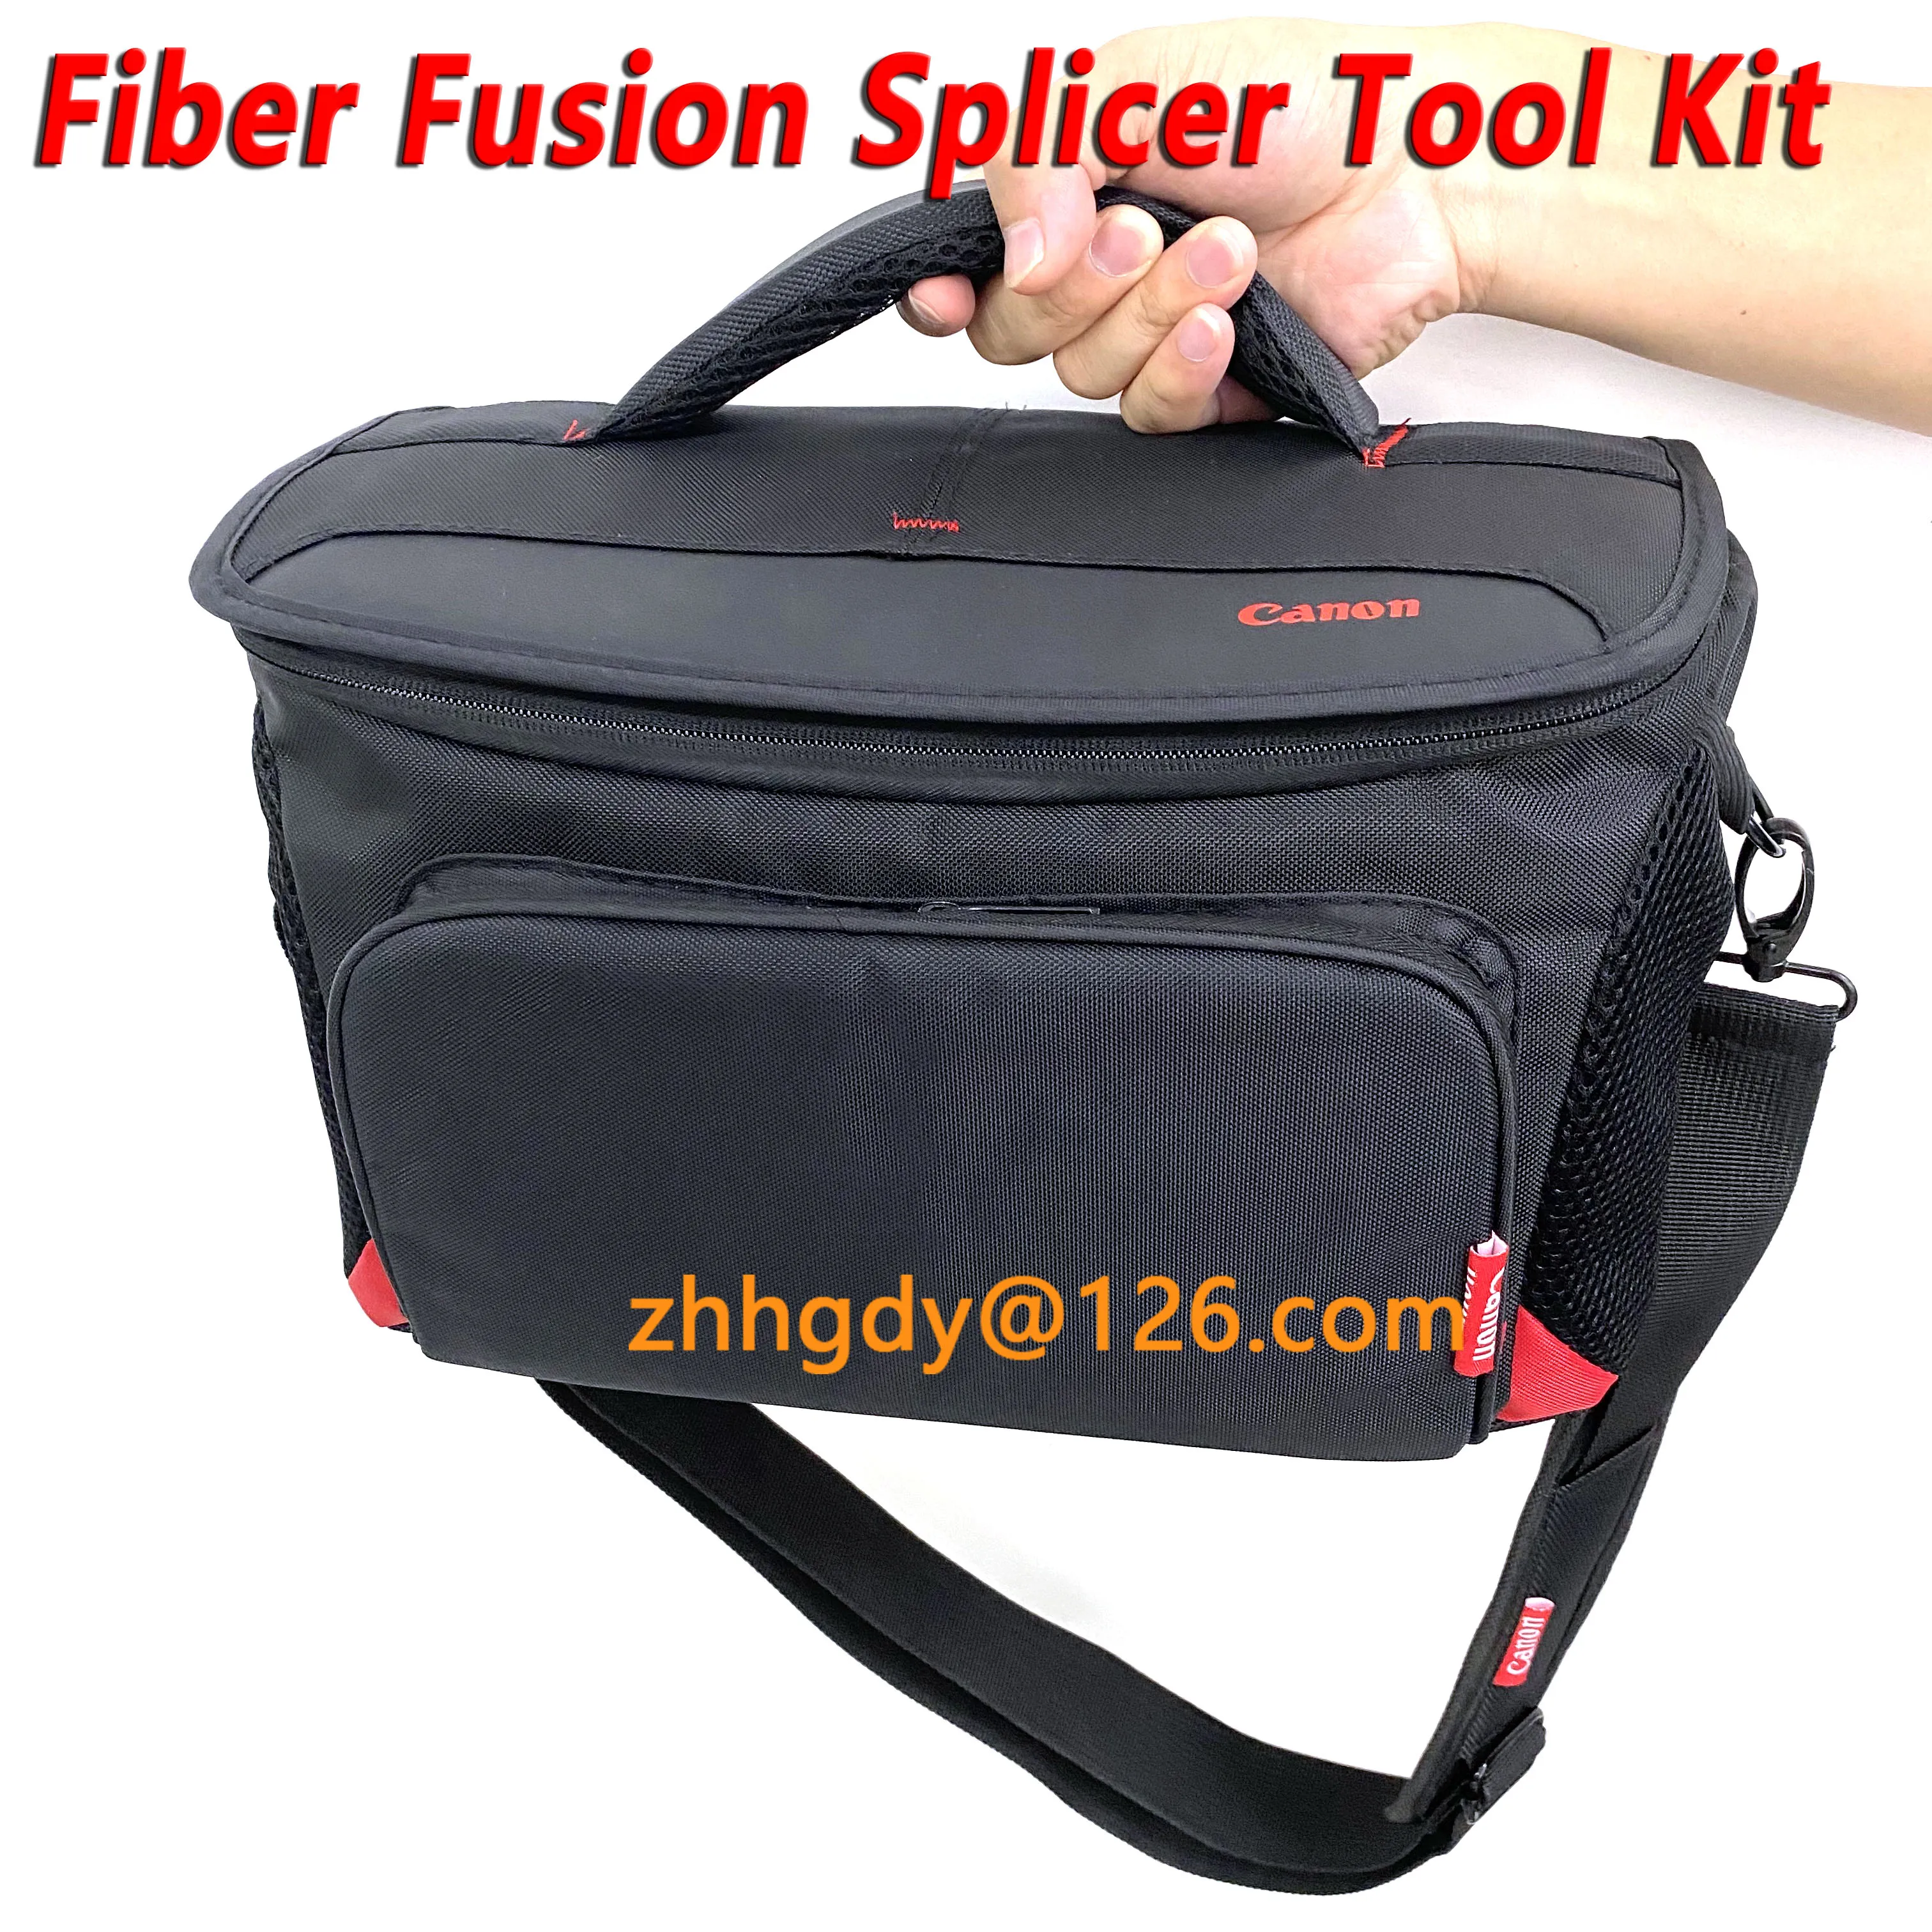 Sumitomo Comtth Special Tool Bag, Pacote de Máquina de Fiber Fusion, Resistente ao desgaste, Impermeável, Anti-sísmico, Derreter, Cheio